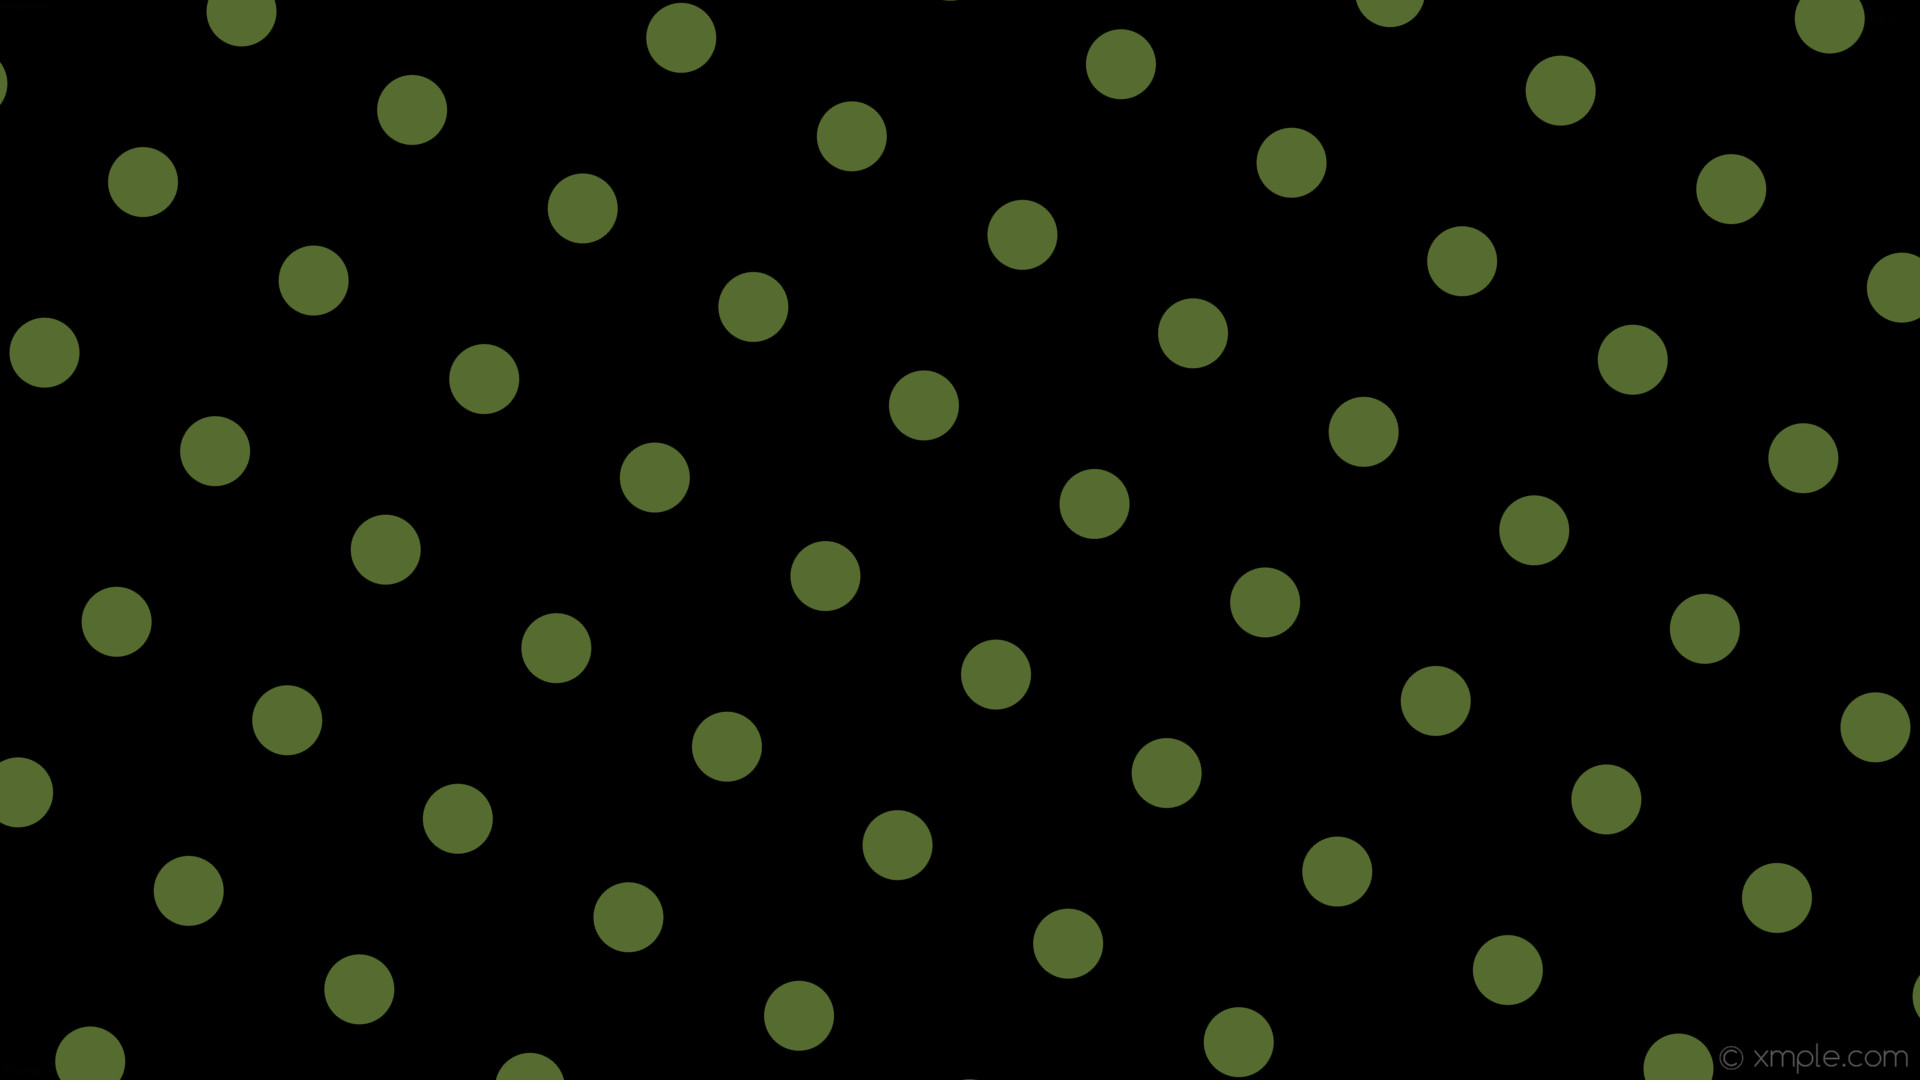 1920x1080 wallpaper green spots black polka dots dark olive green #000000 #556b2f  150Â° 70px